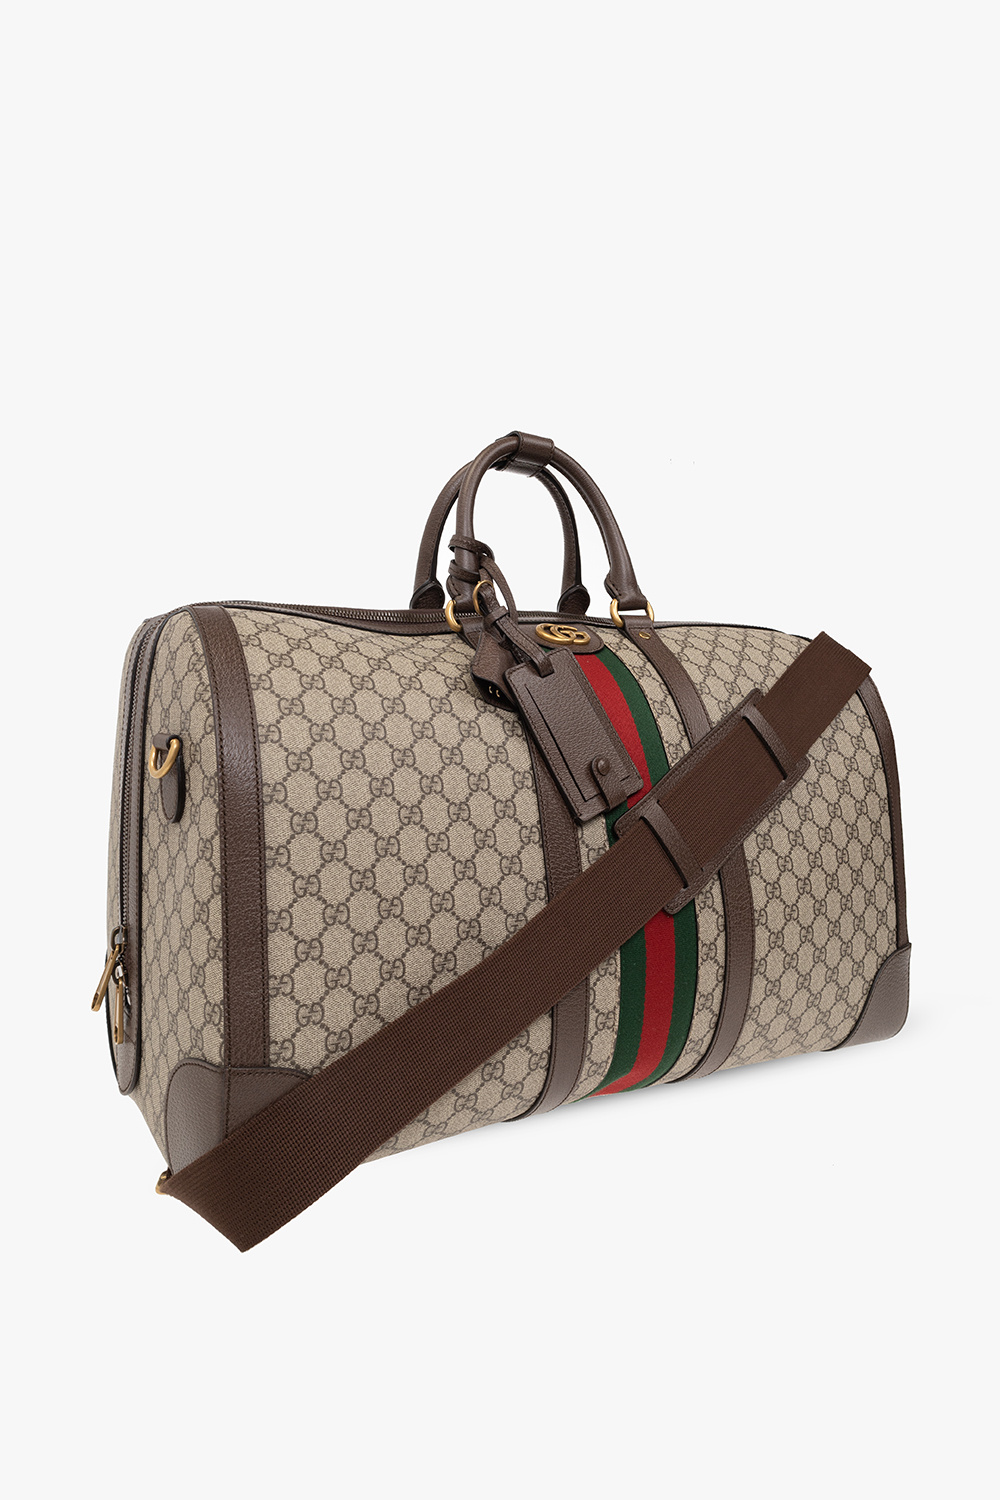 Gucci Savoy garment bag in Beige Brown GG Canvas